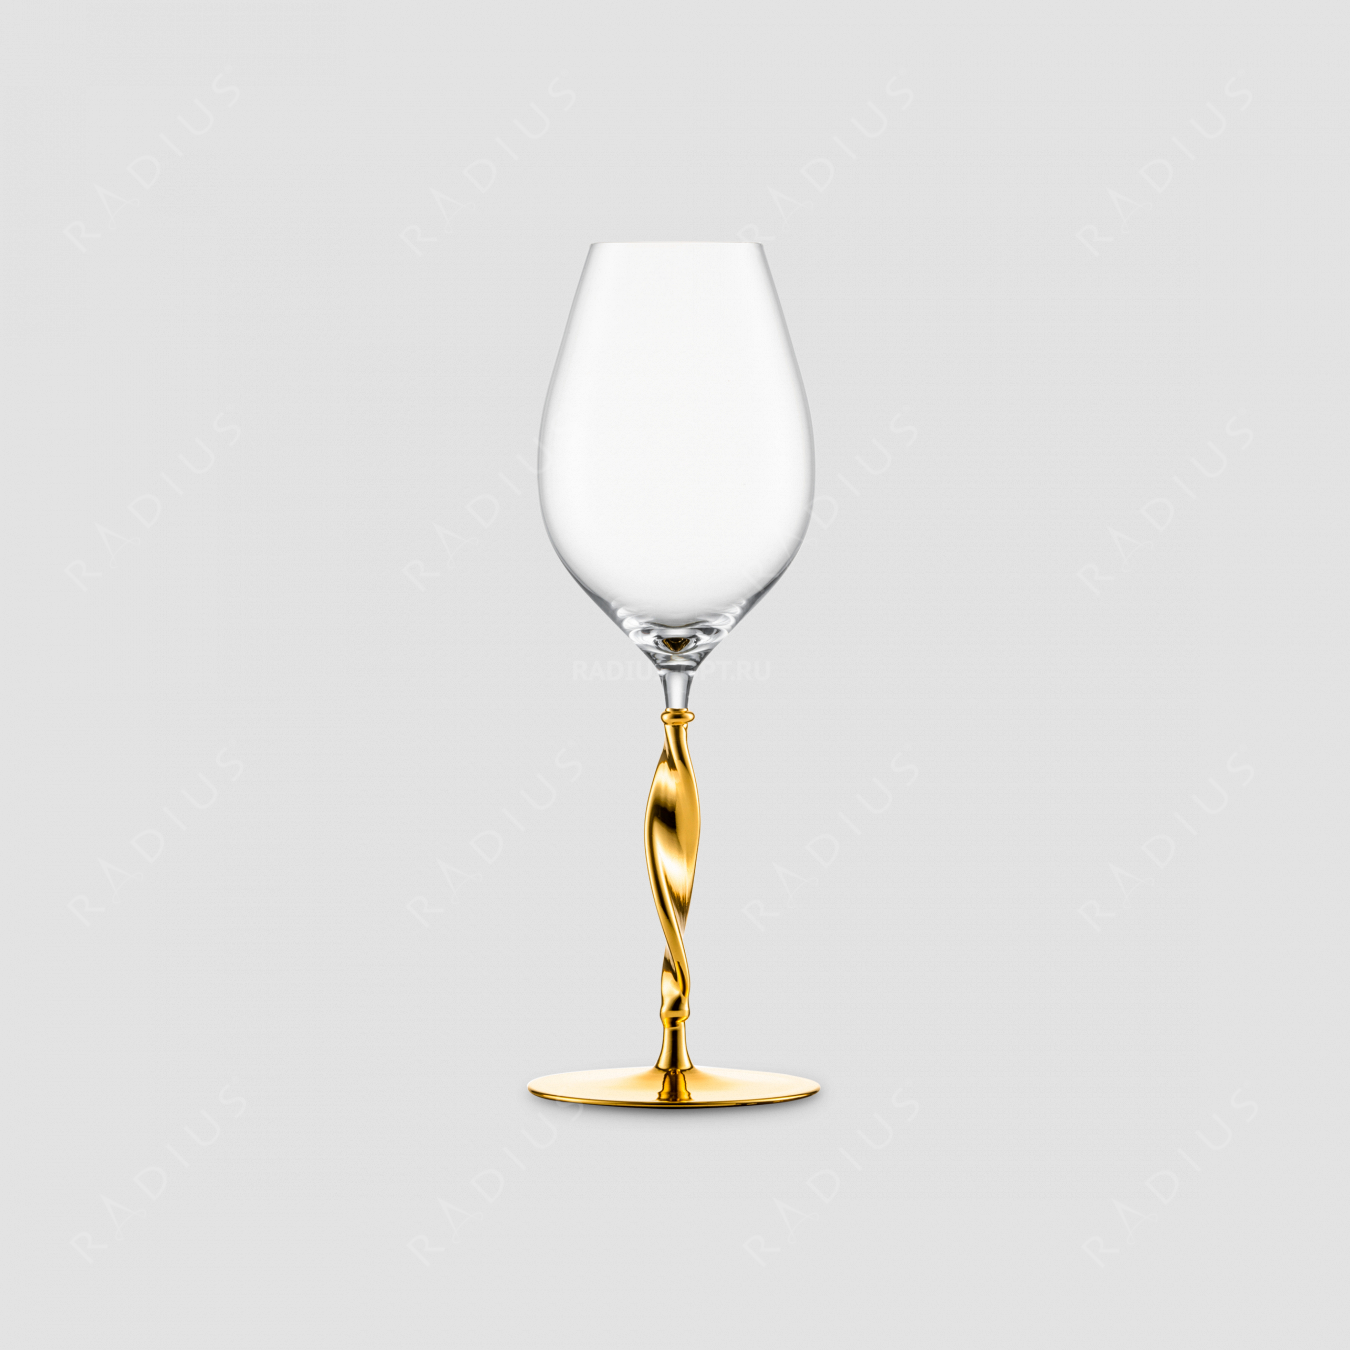 Бокал для шампанского, объем 400 мл, материал - бессвинцовый хрусталь, золото, cерия Champagner Exklusiv, EISCH, Германия